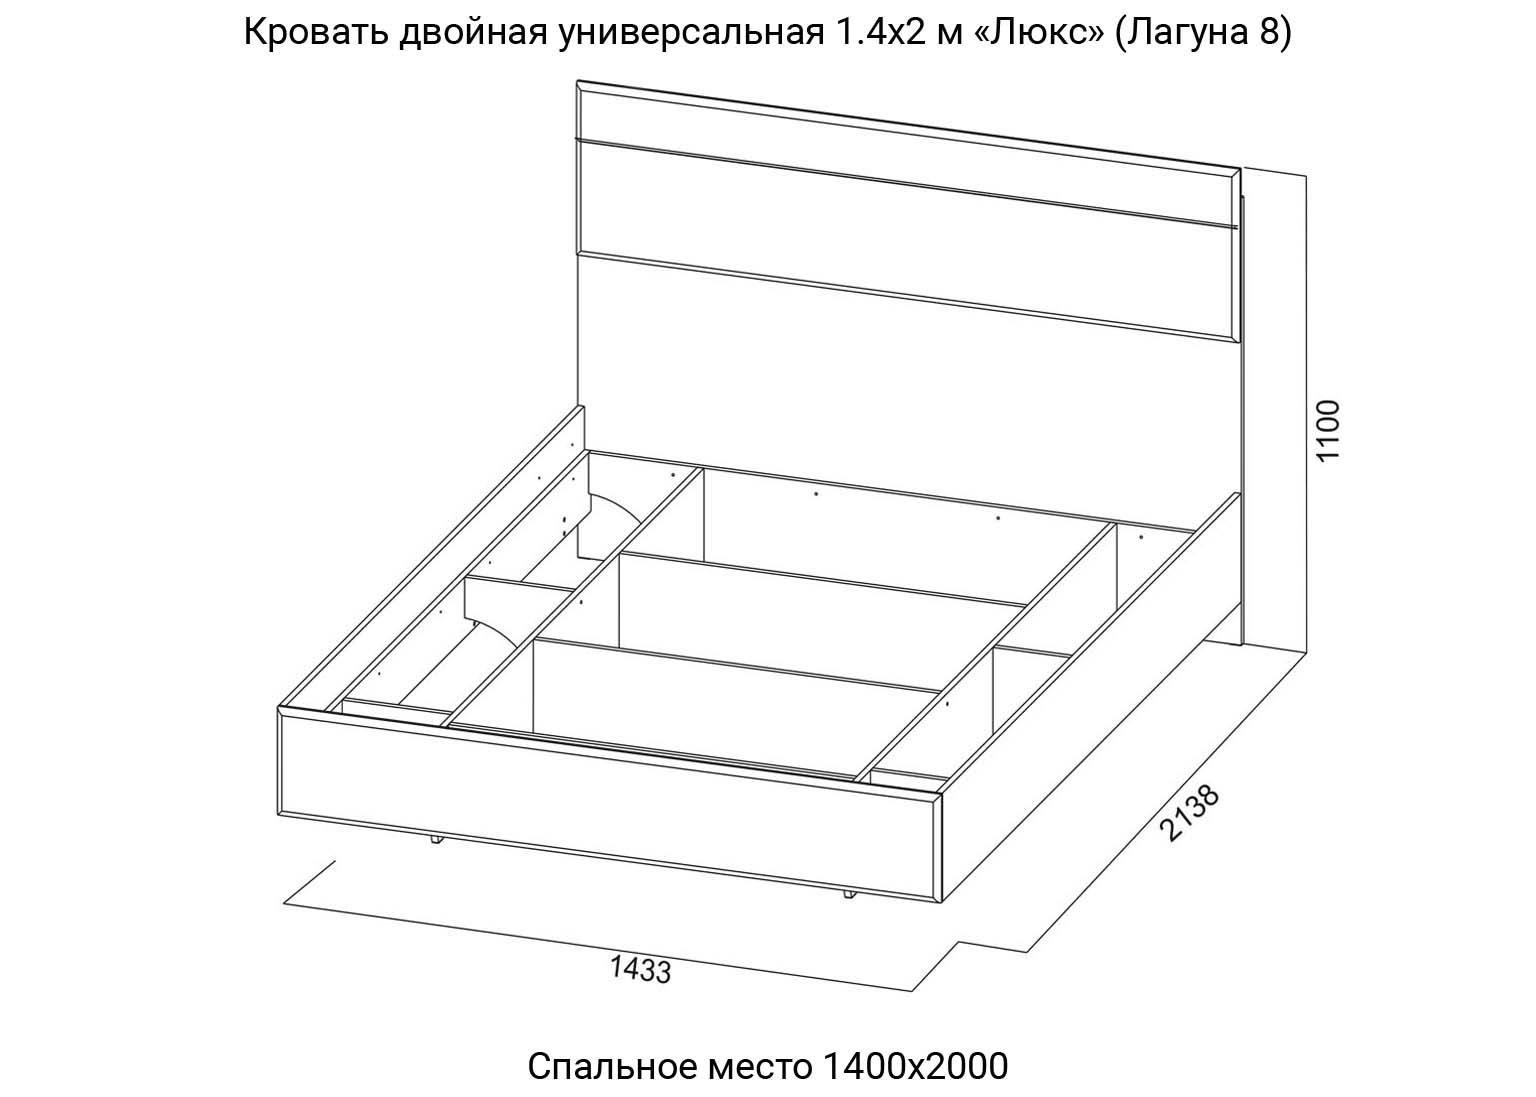 Спальня Лагуна 8 Кровать двойная 1400 мм Люкс схема SV-Мебель